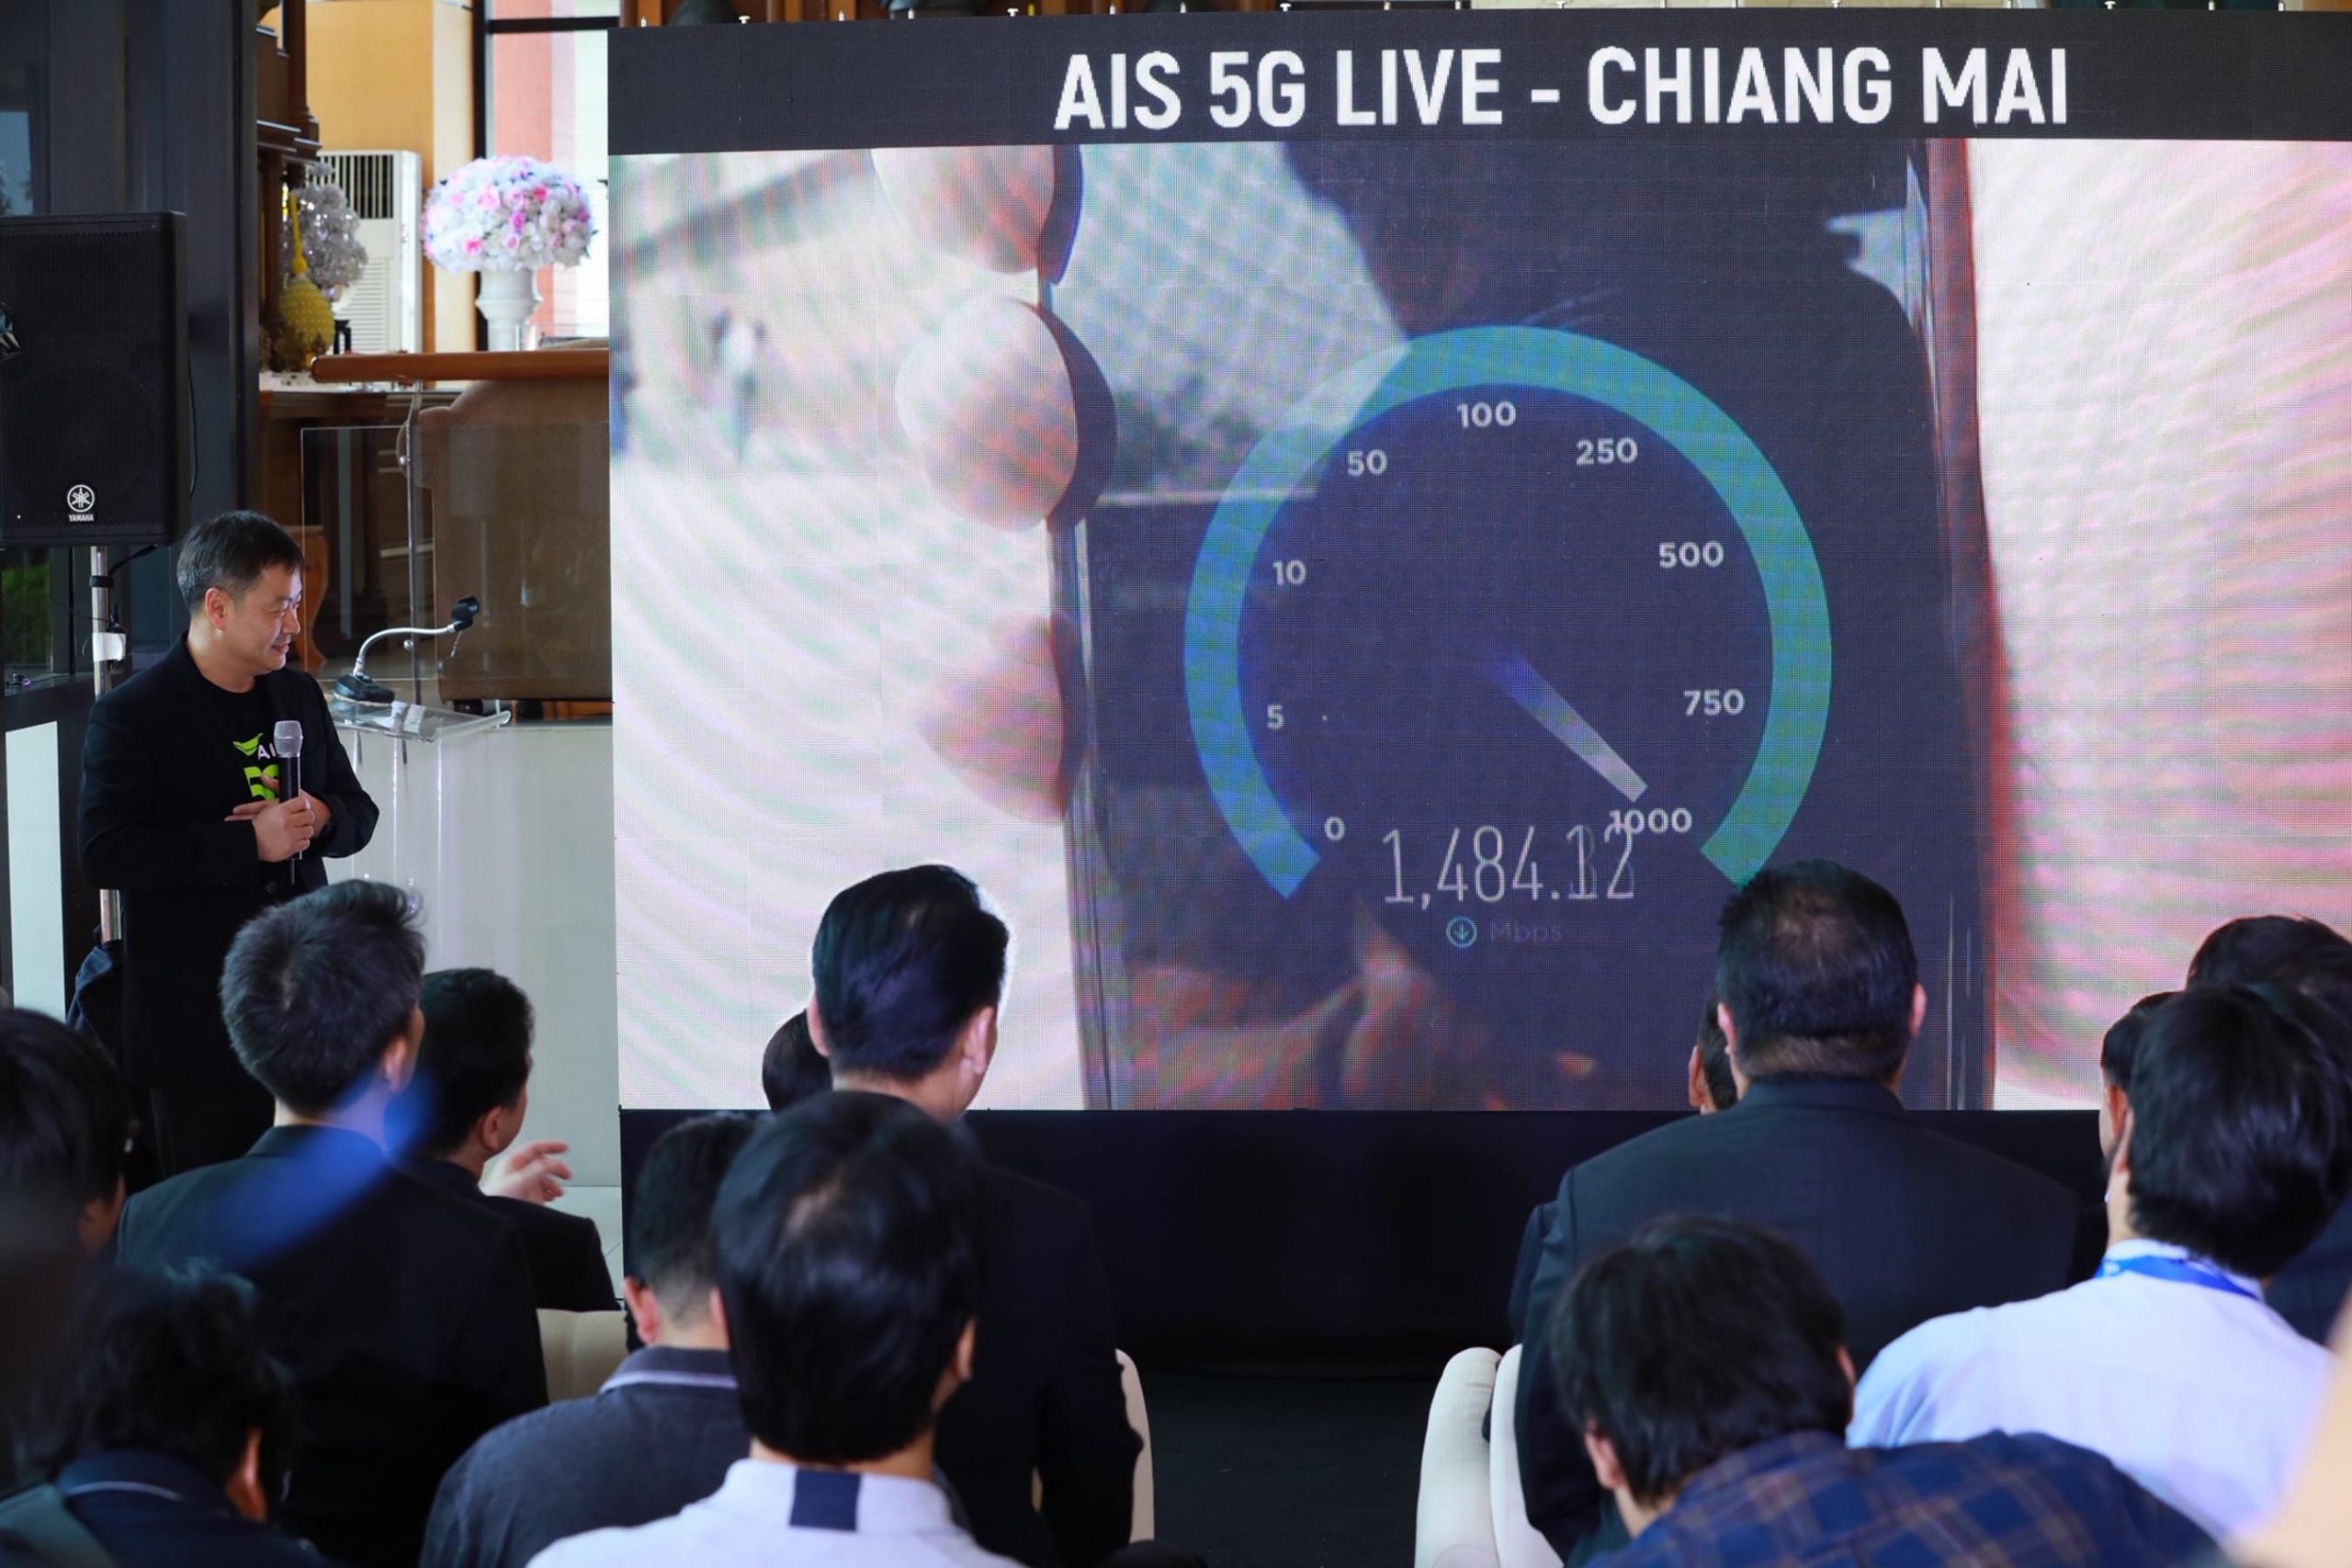 AIS เปิดเครือข่าย 5G ทั่วประเทศอย่างเป็นทางการ เป็นรายแรกของประเทศไทย